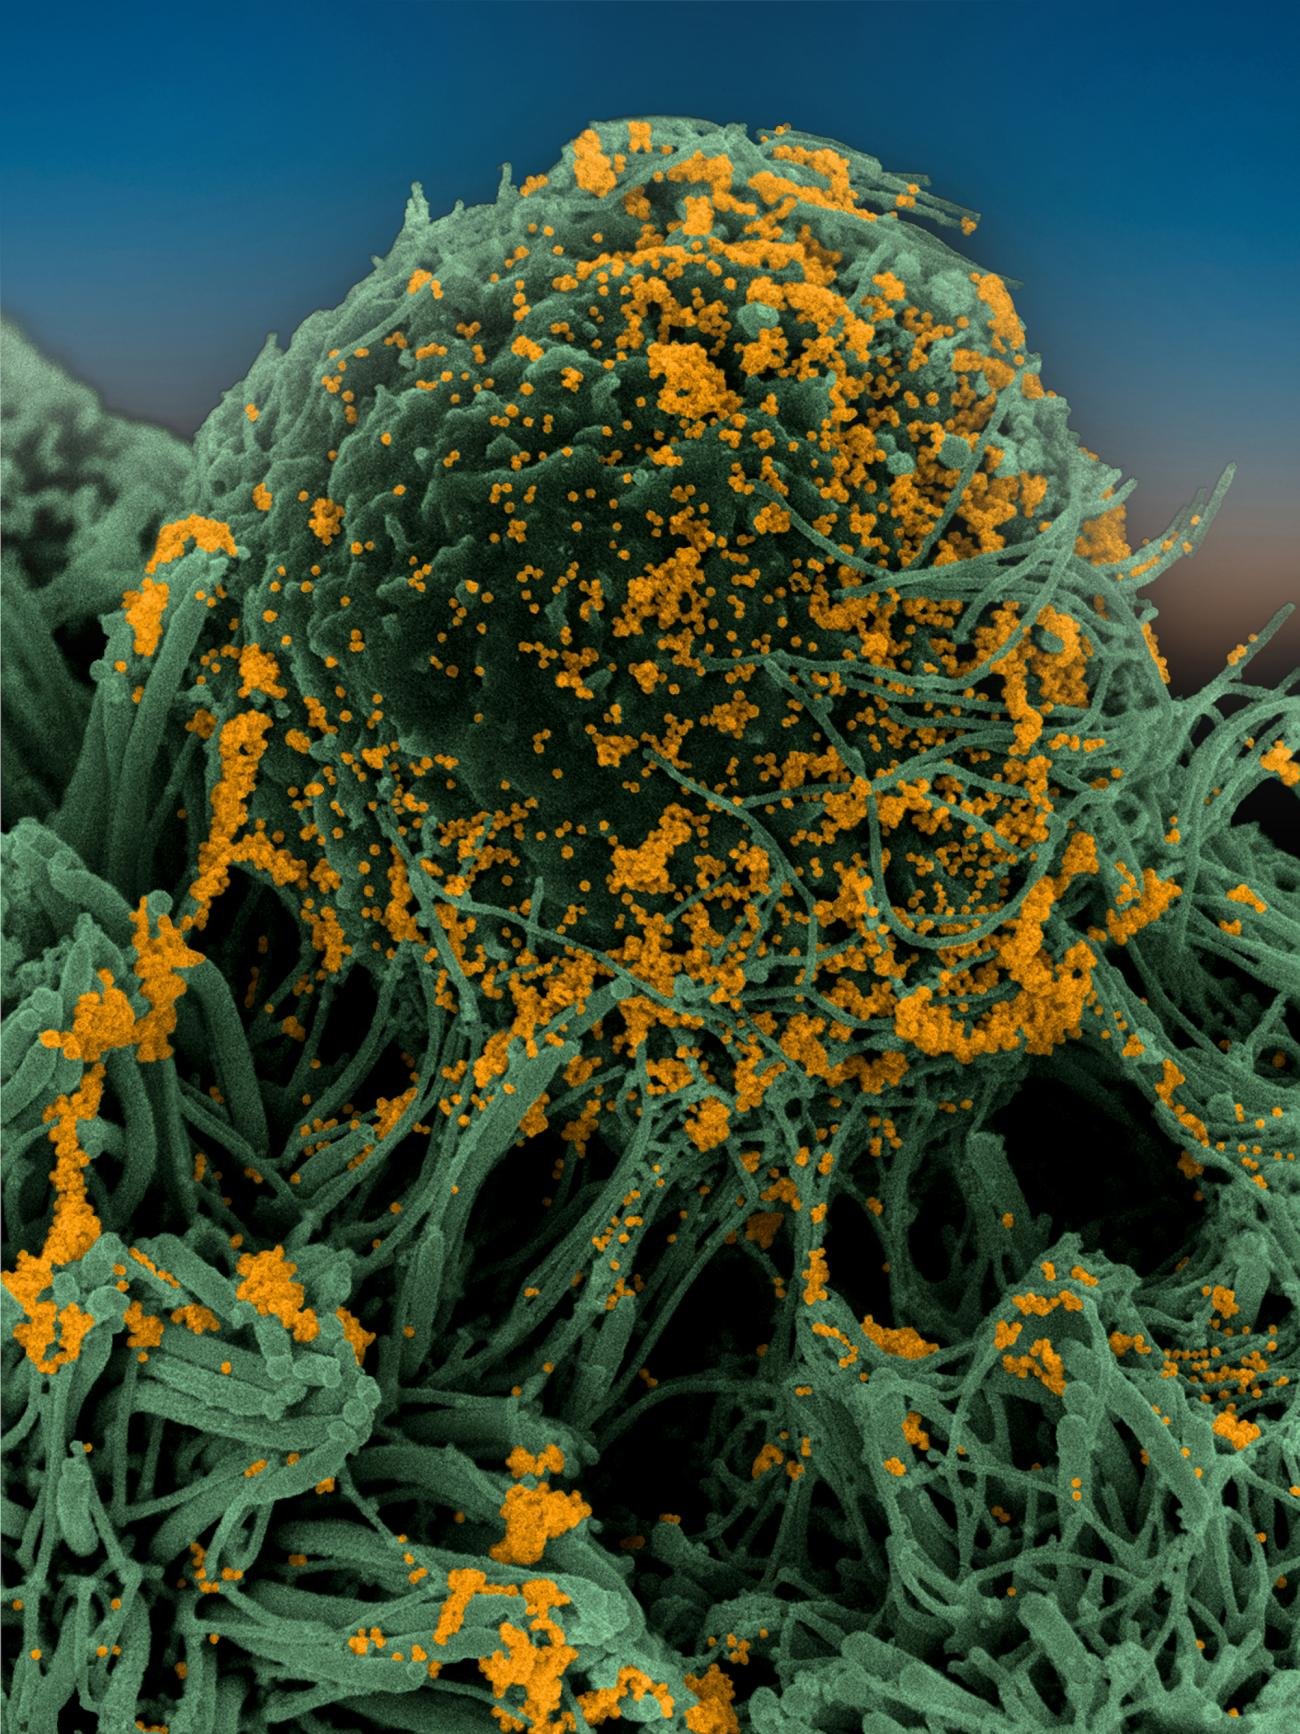 Cellules bronchiques humaines infectées par SARS-CoV-2